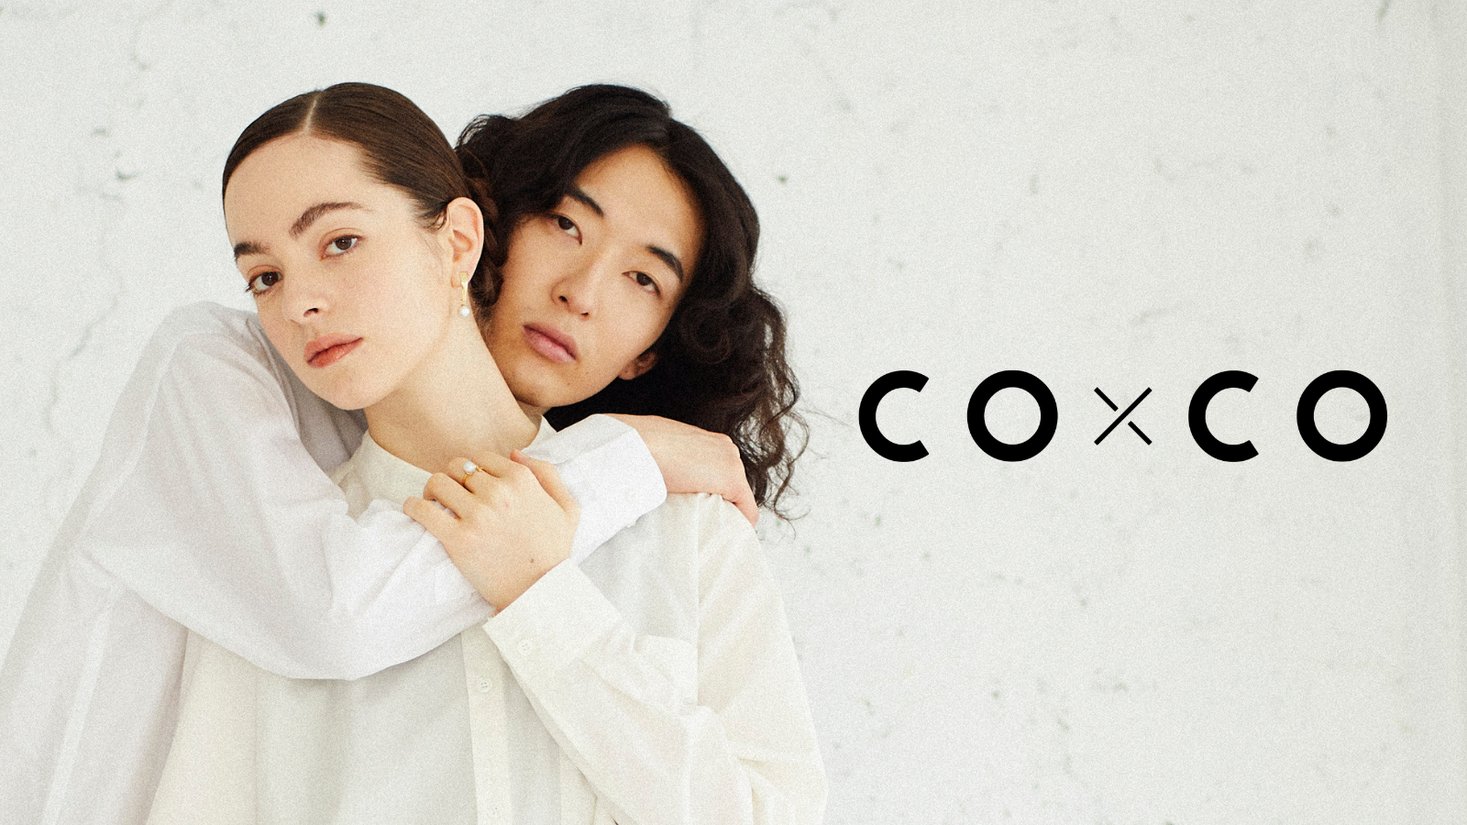 アパレル廃棄 海洋汚染 の社会課題に取り組む 服のかたちをしたメディア Coxco の第2弾 ノーノーマル 販売開始 株式会社coxcoのプレスリリース